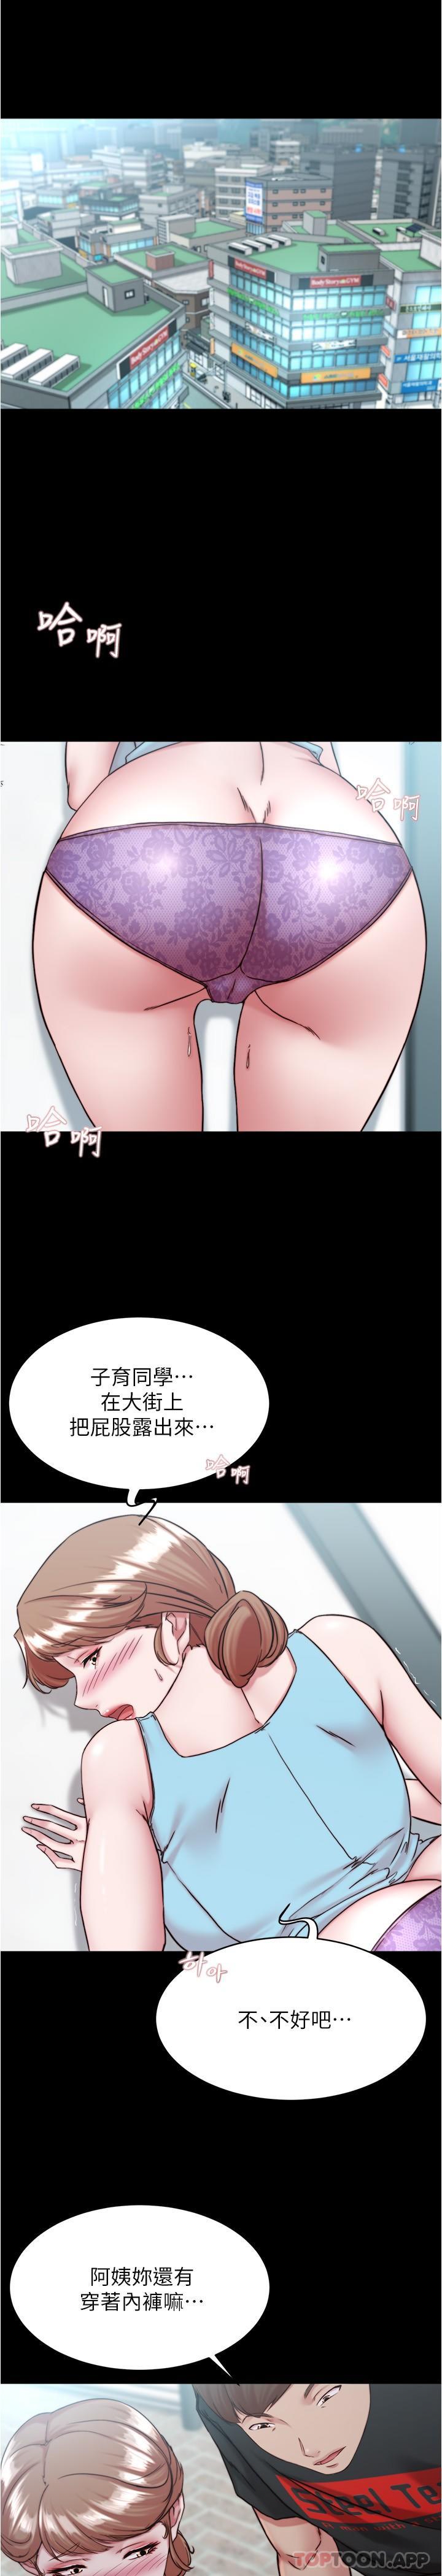 韩国污漫画 小褲褲筆記 第129话-在户外兴奋的阿姨 4